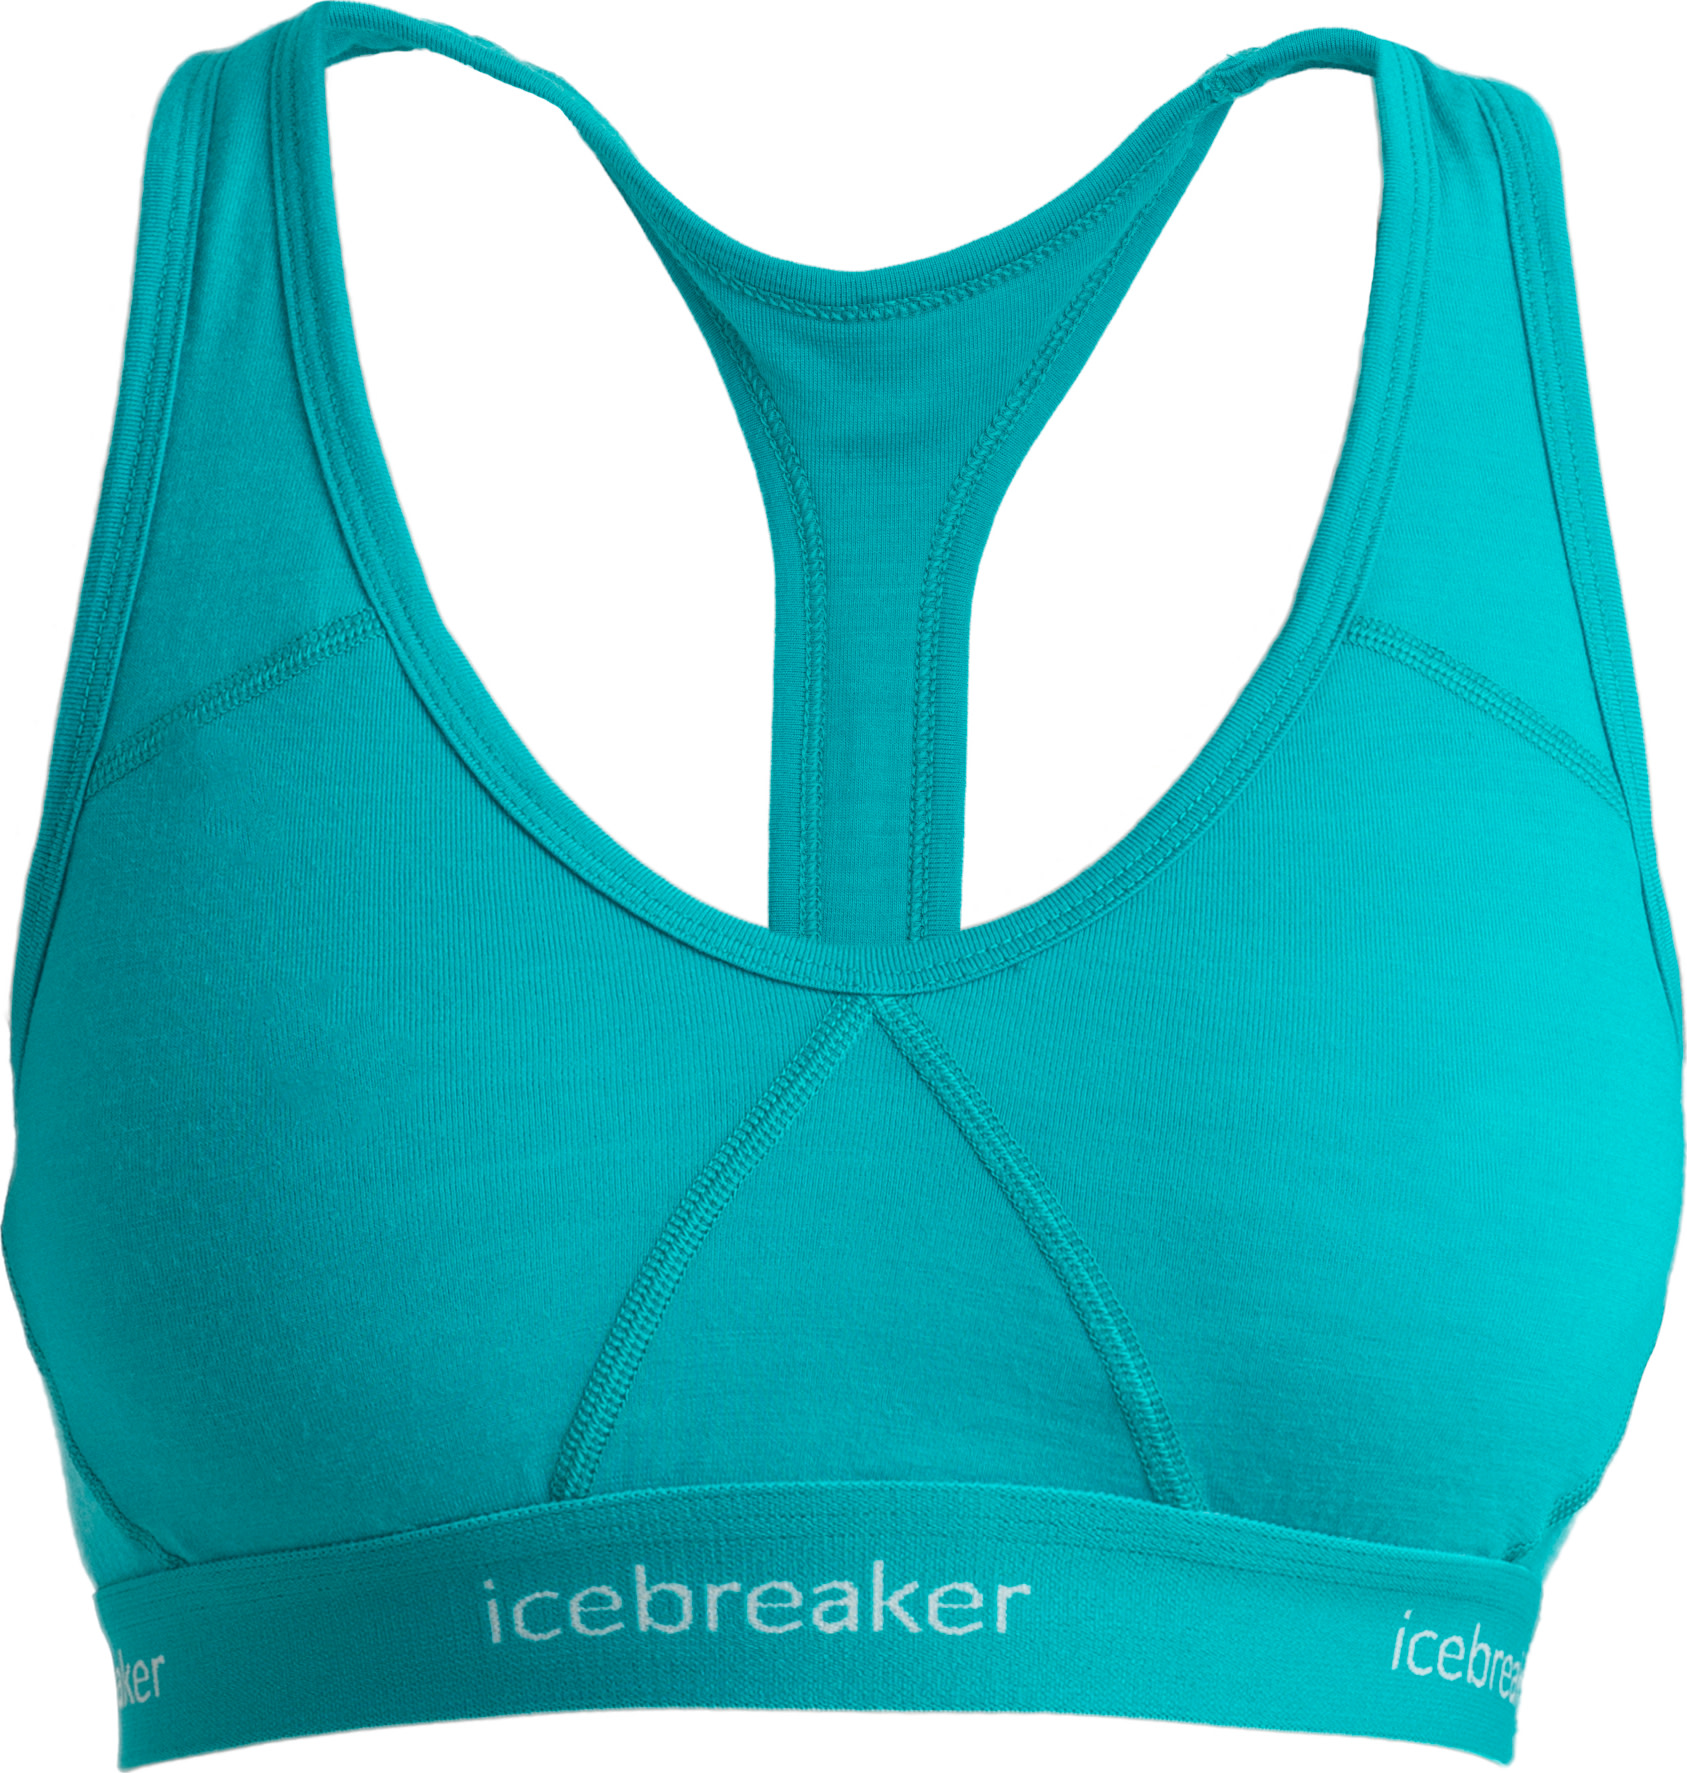 Icebreaker Sprite Racerback Bra - Women's , Up to 13% Off with